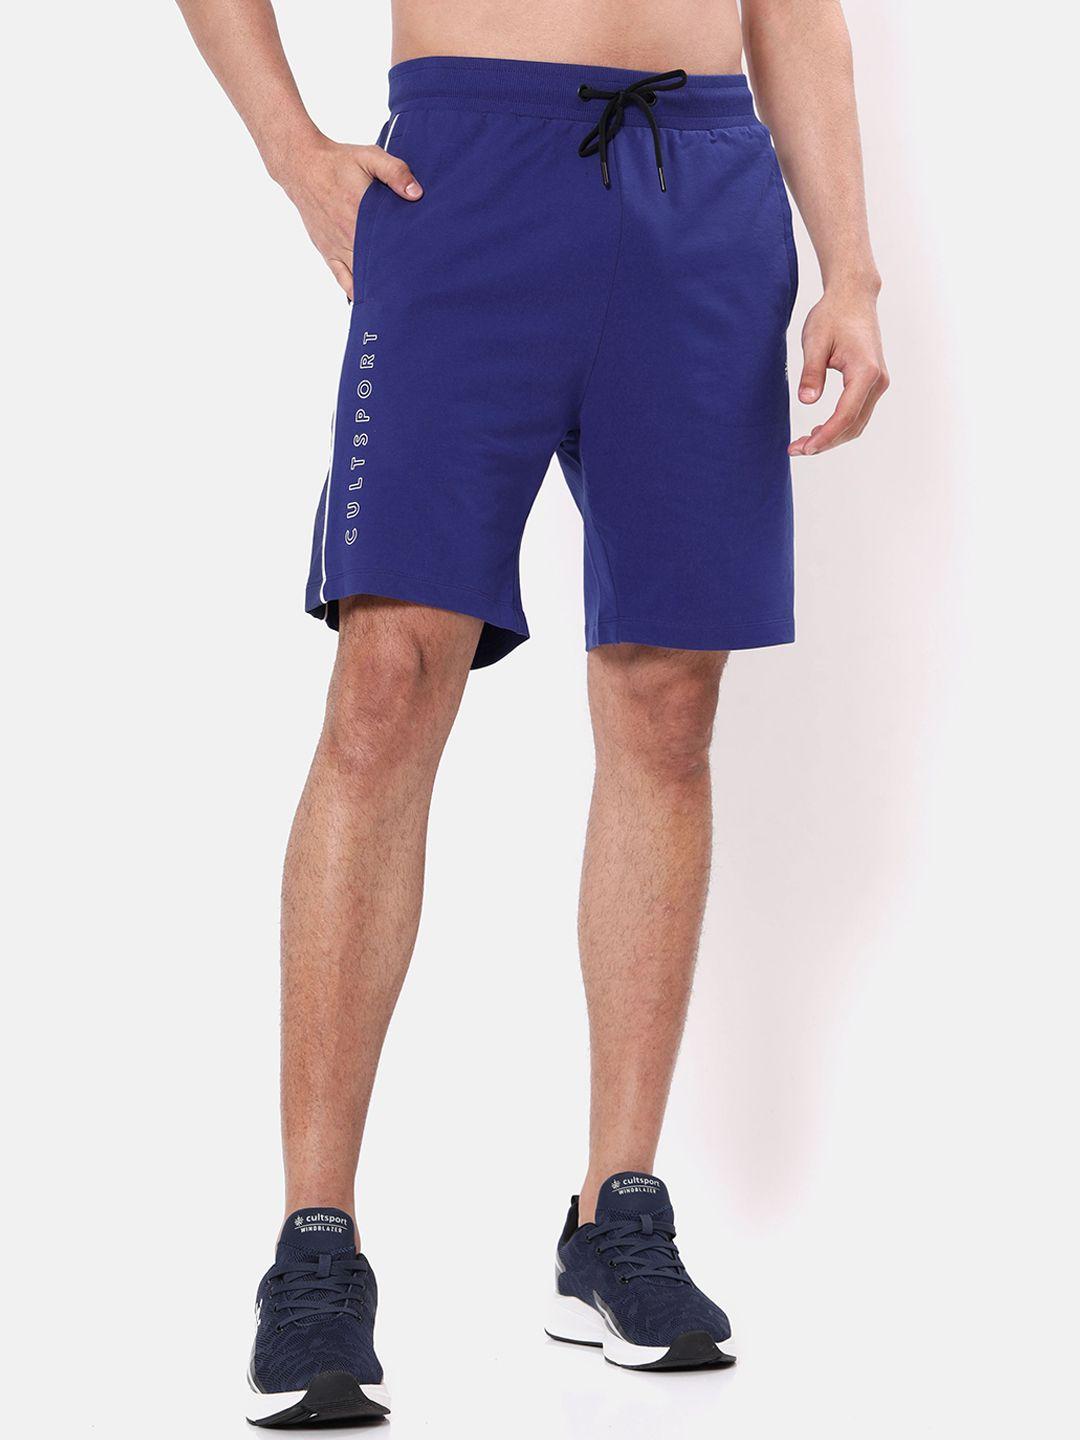 cultsport men blue cotton running sports shorts